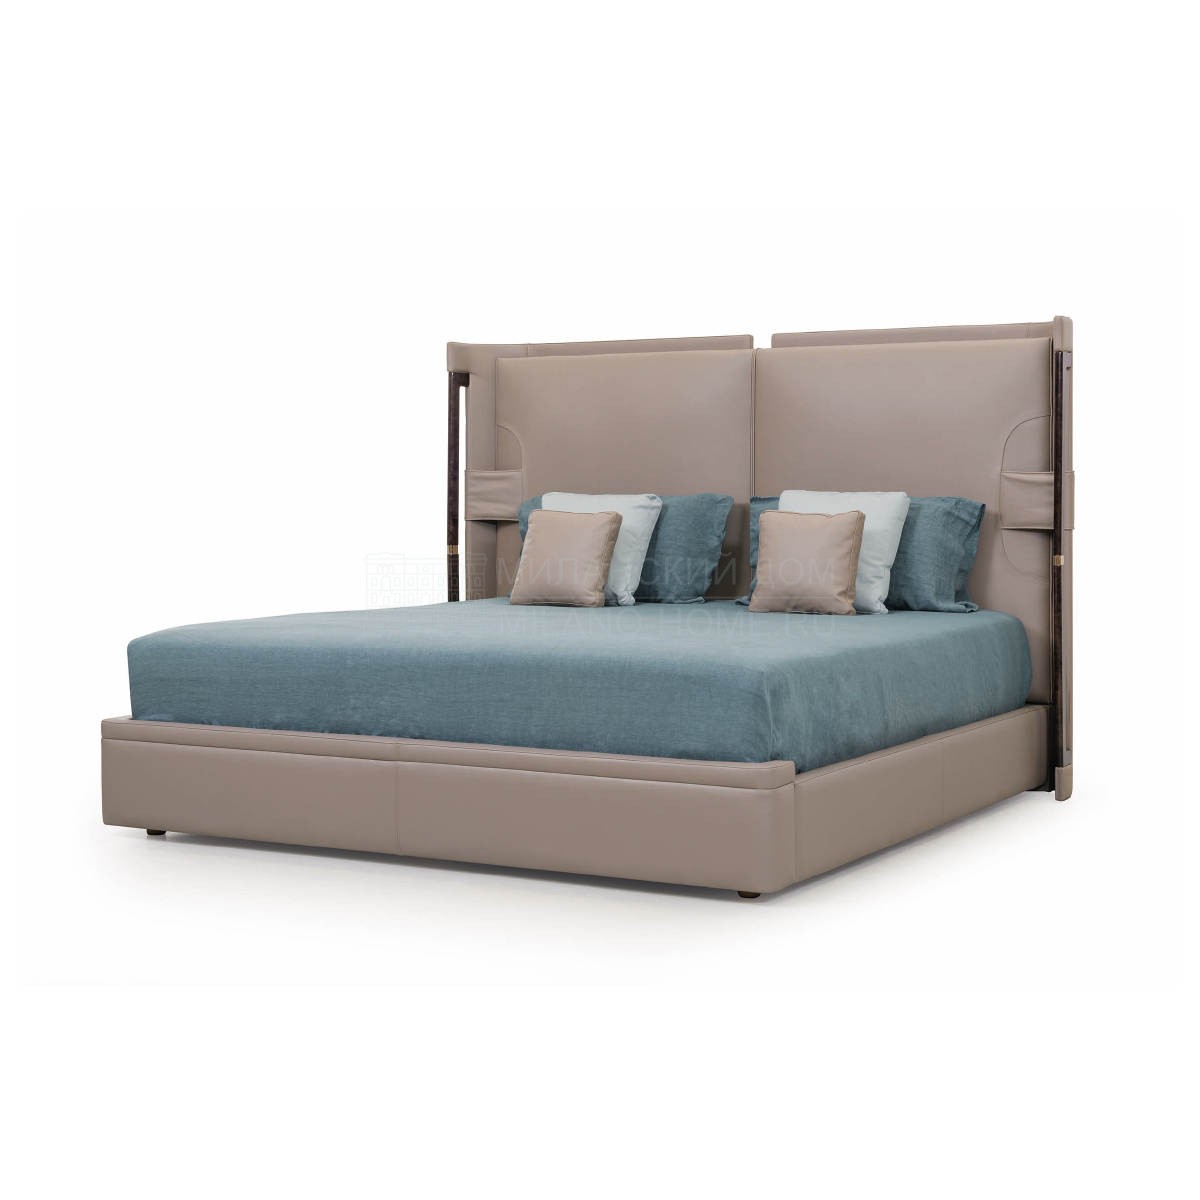 Двуспальная кровать Eclipse bed из Италии фабрики TURRI